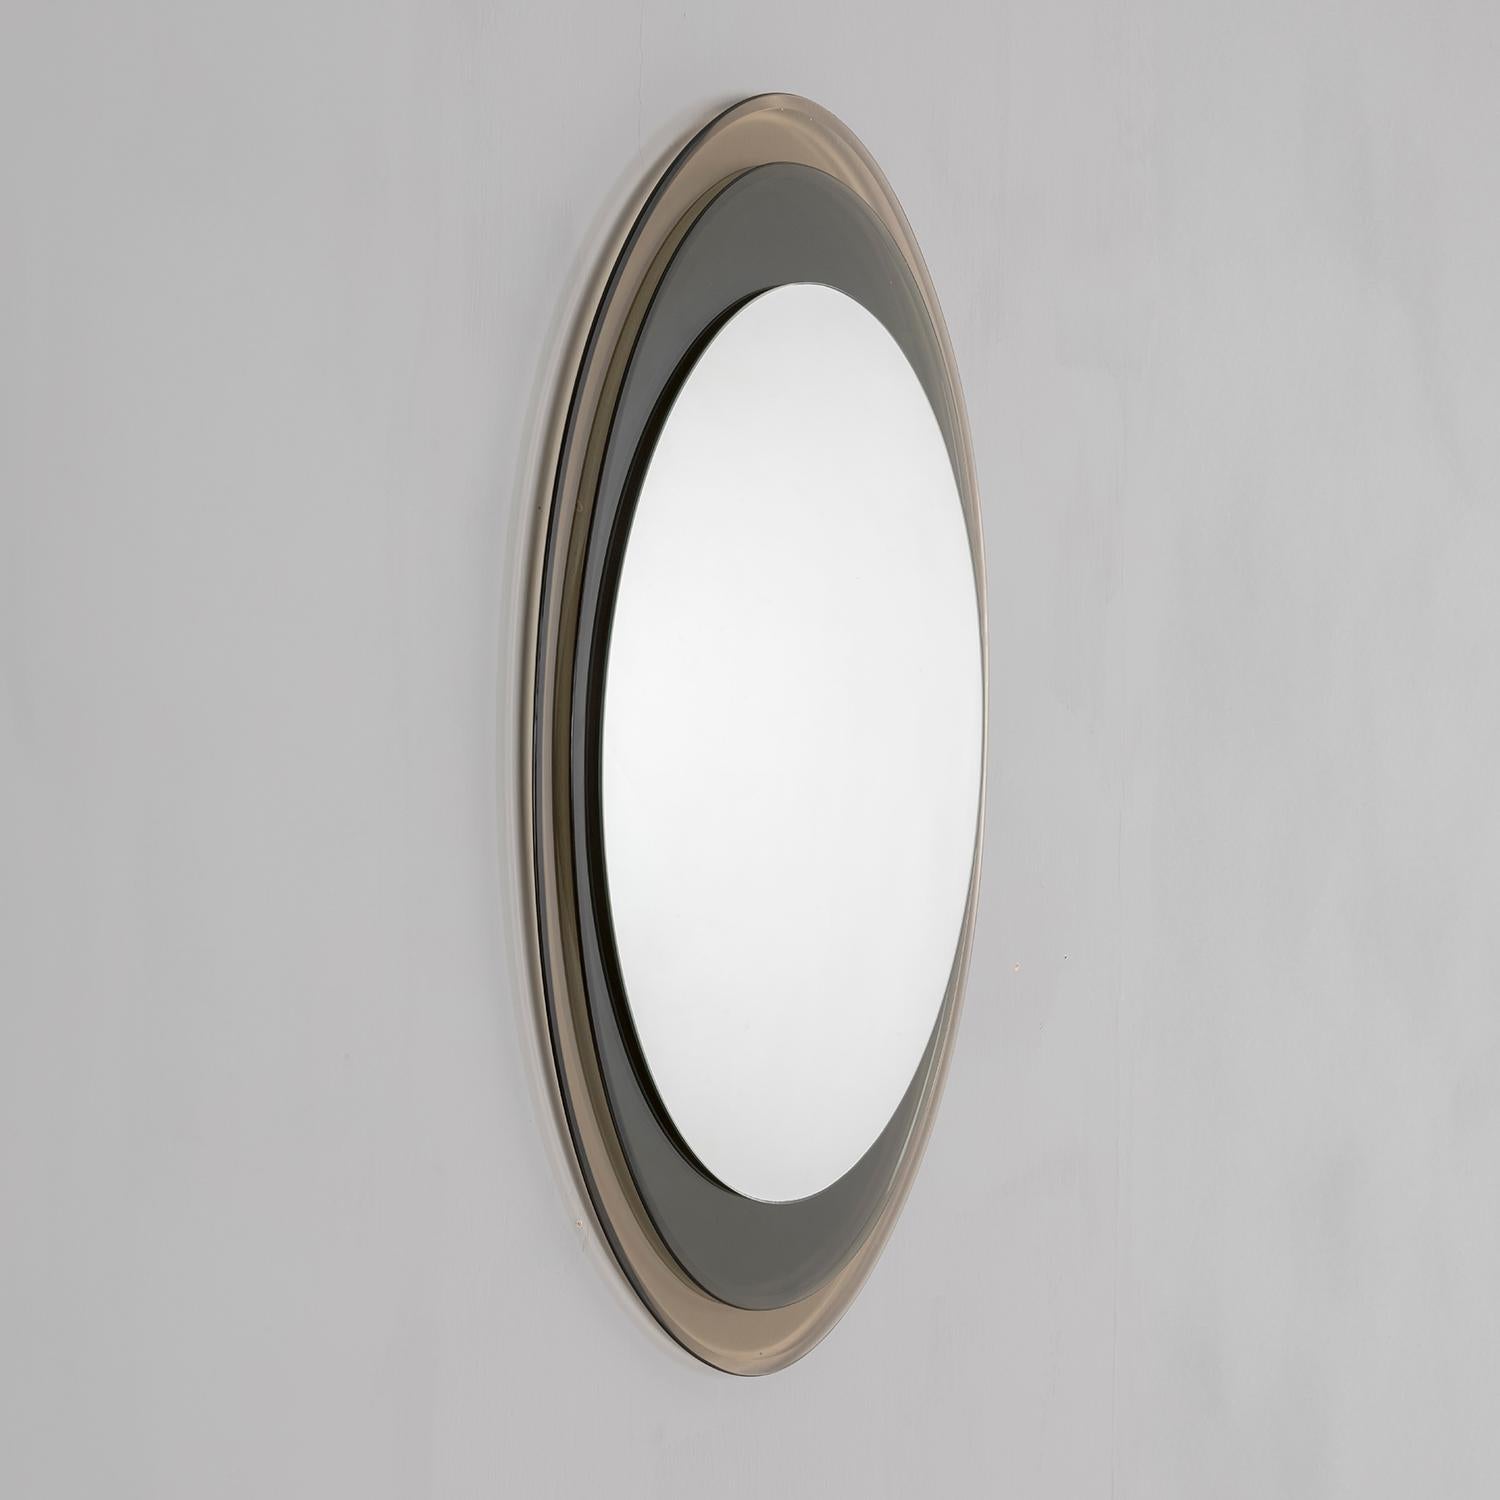 Wandspiegel Modell 2046, entworfen in den 1960er Jahren von Max Ingrand und hergestellt von Fontana Arte. Der Spiegel ist eine elegante Überlagerung von grauen und grünen Glasscheiben und kann sowohl vertikal als auch horizontal aufgehängt werden.